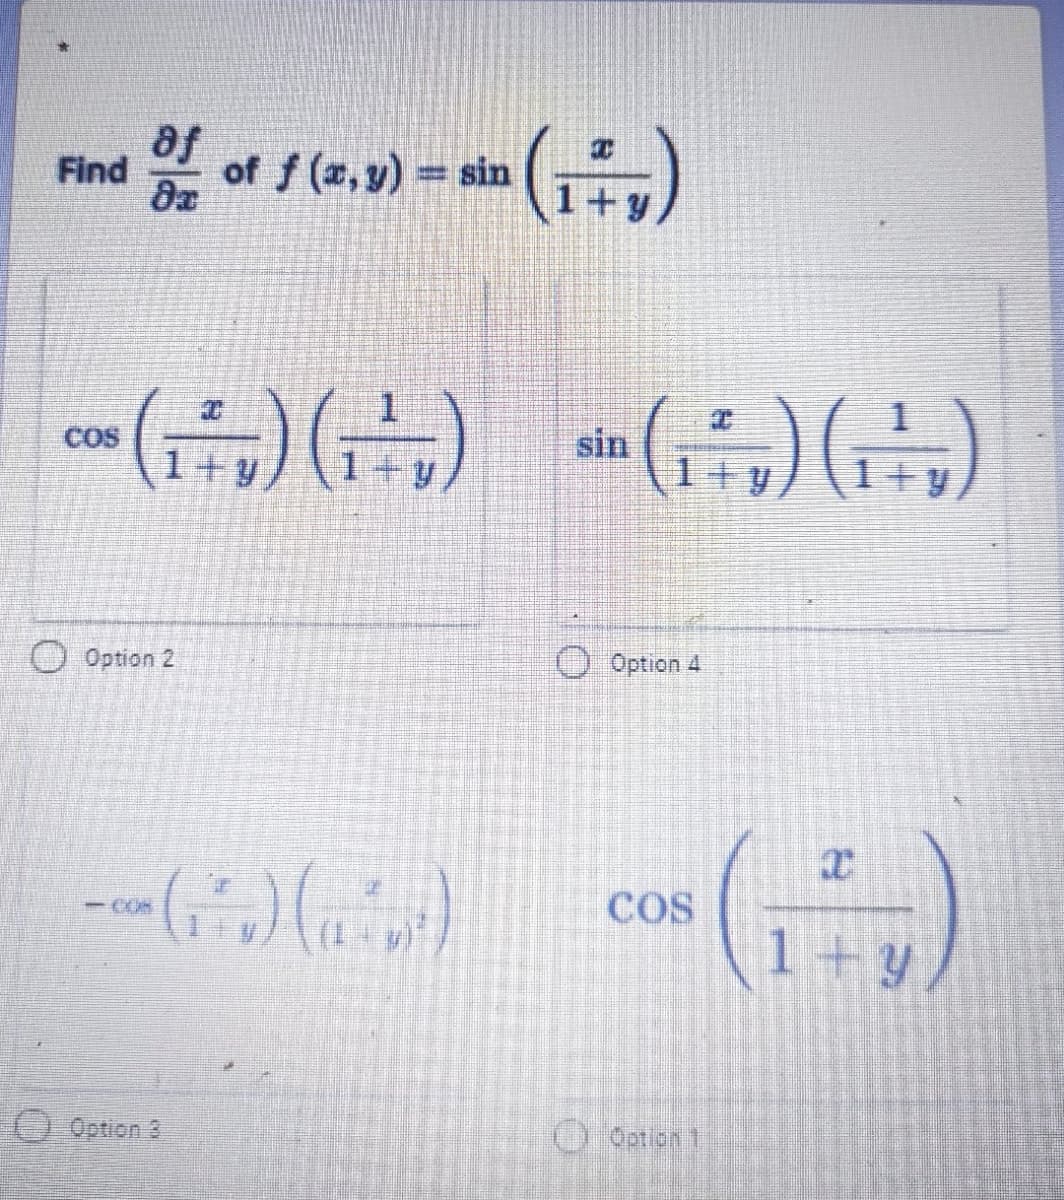 af
Find
of f (a, y) = sin
COS
sin
1+y
O Option 2
O Option 4
COS
-CON
1+ Y
pேமா
O Qotlon 1
